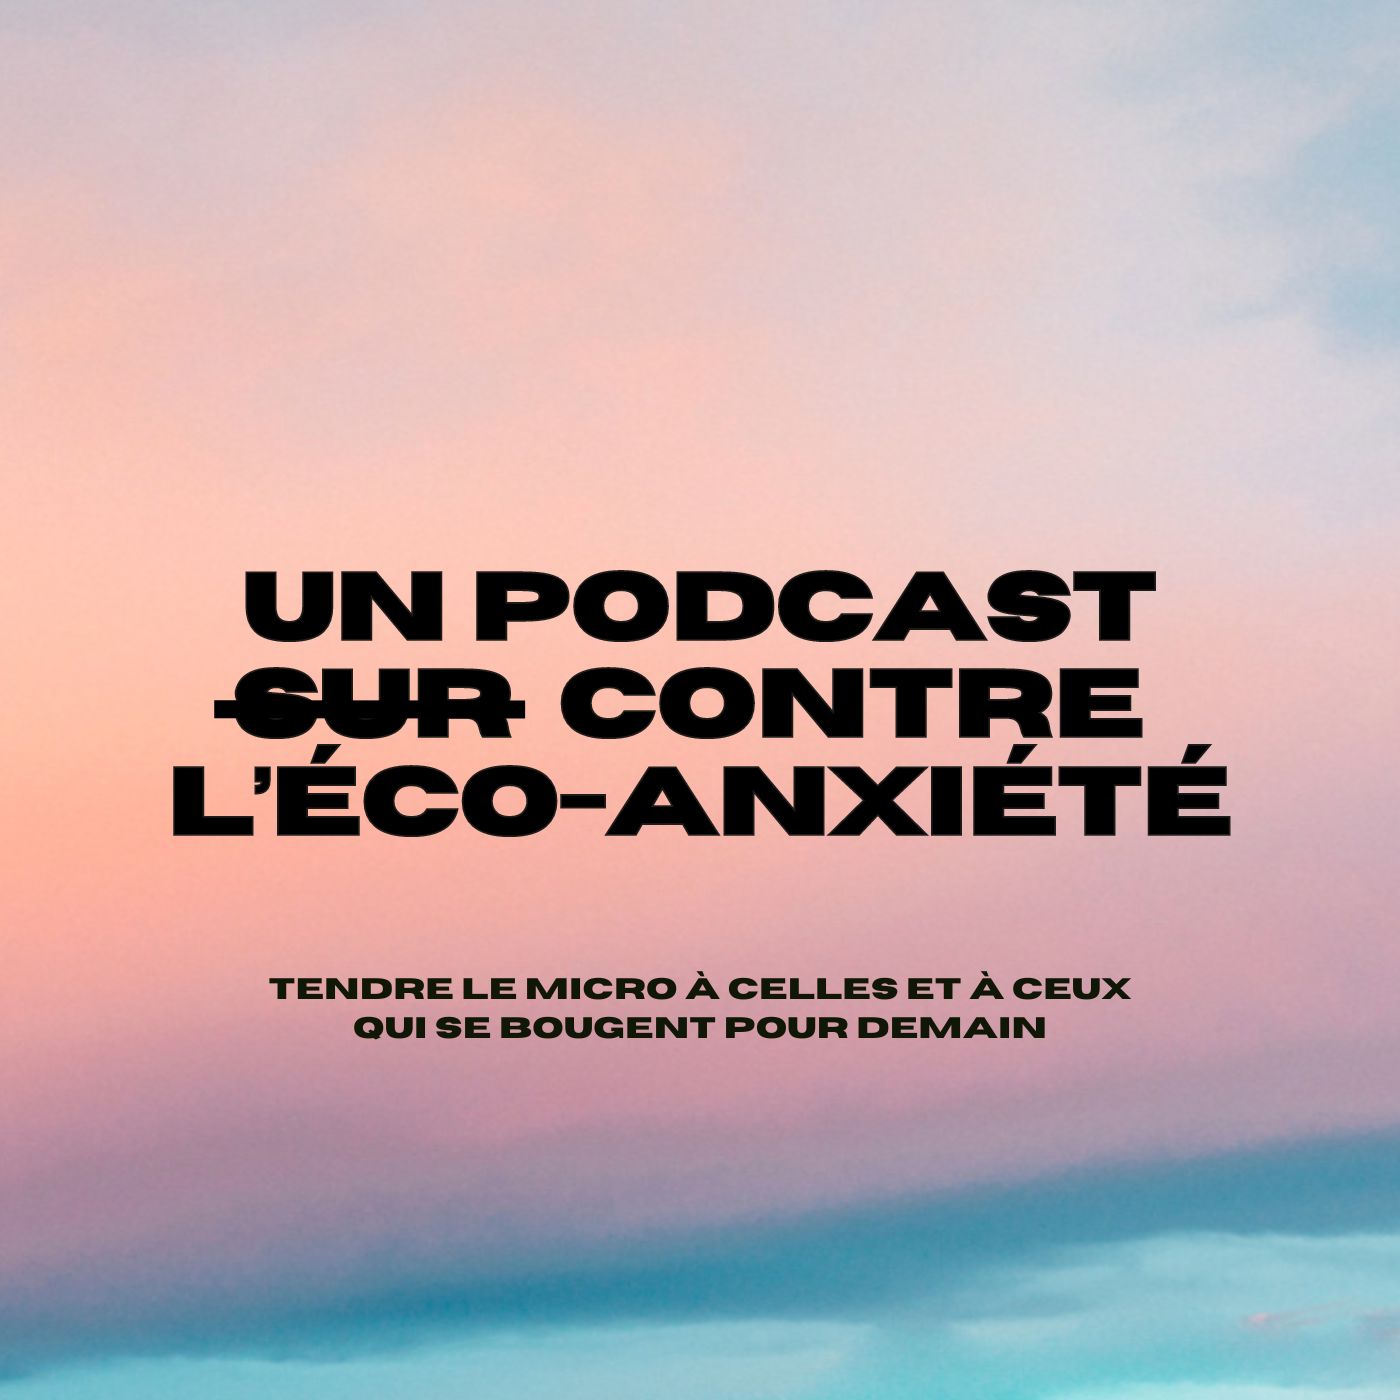 Artwork for Un podcast contre l'éco-anxiété